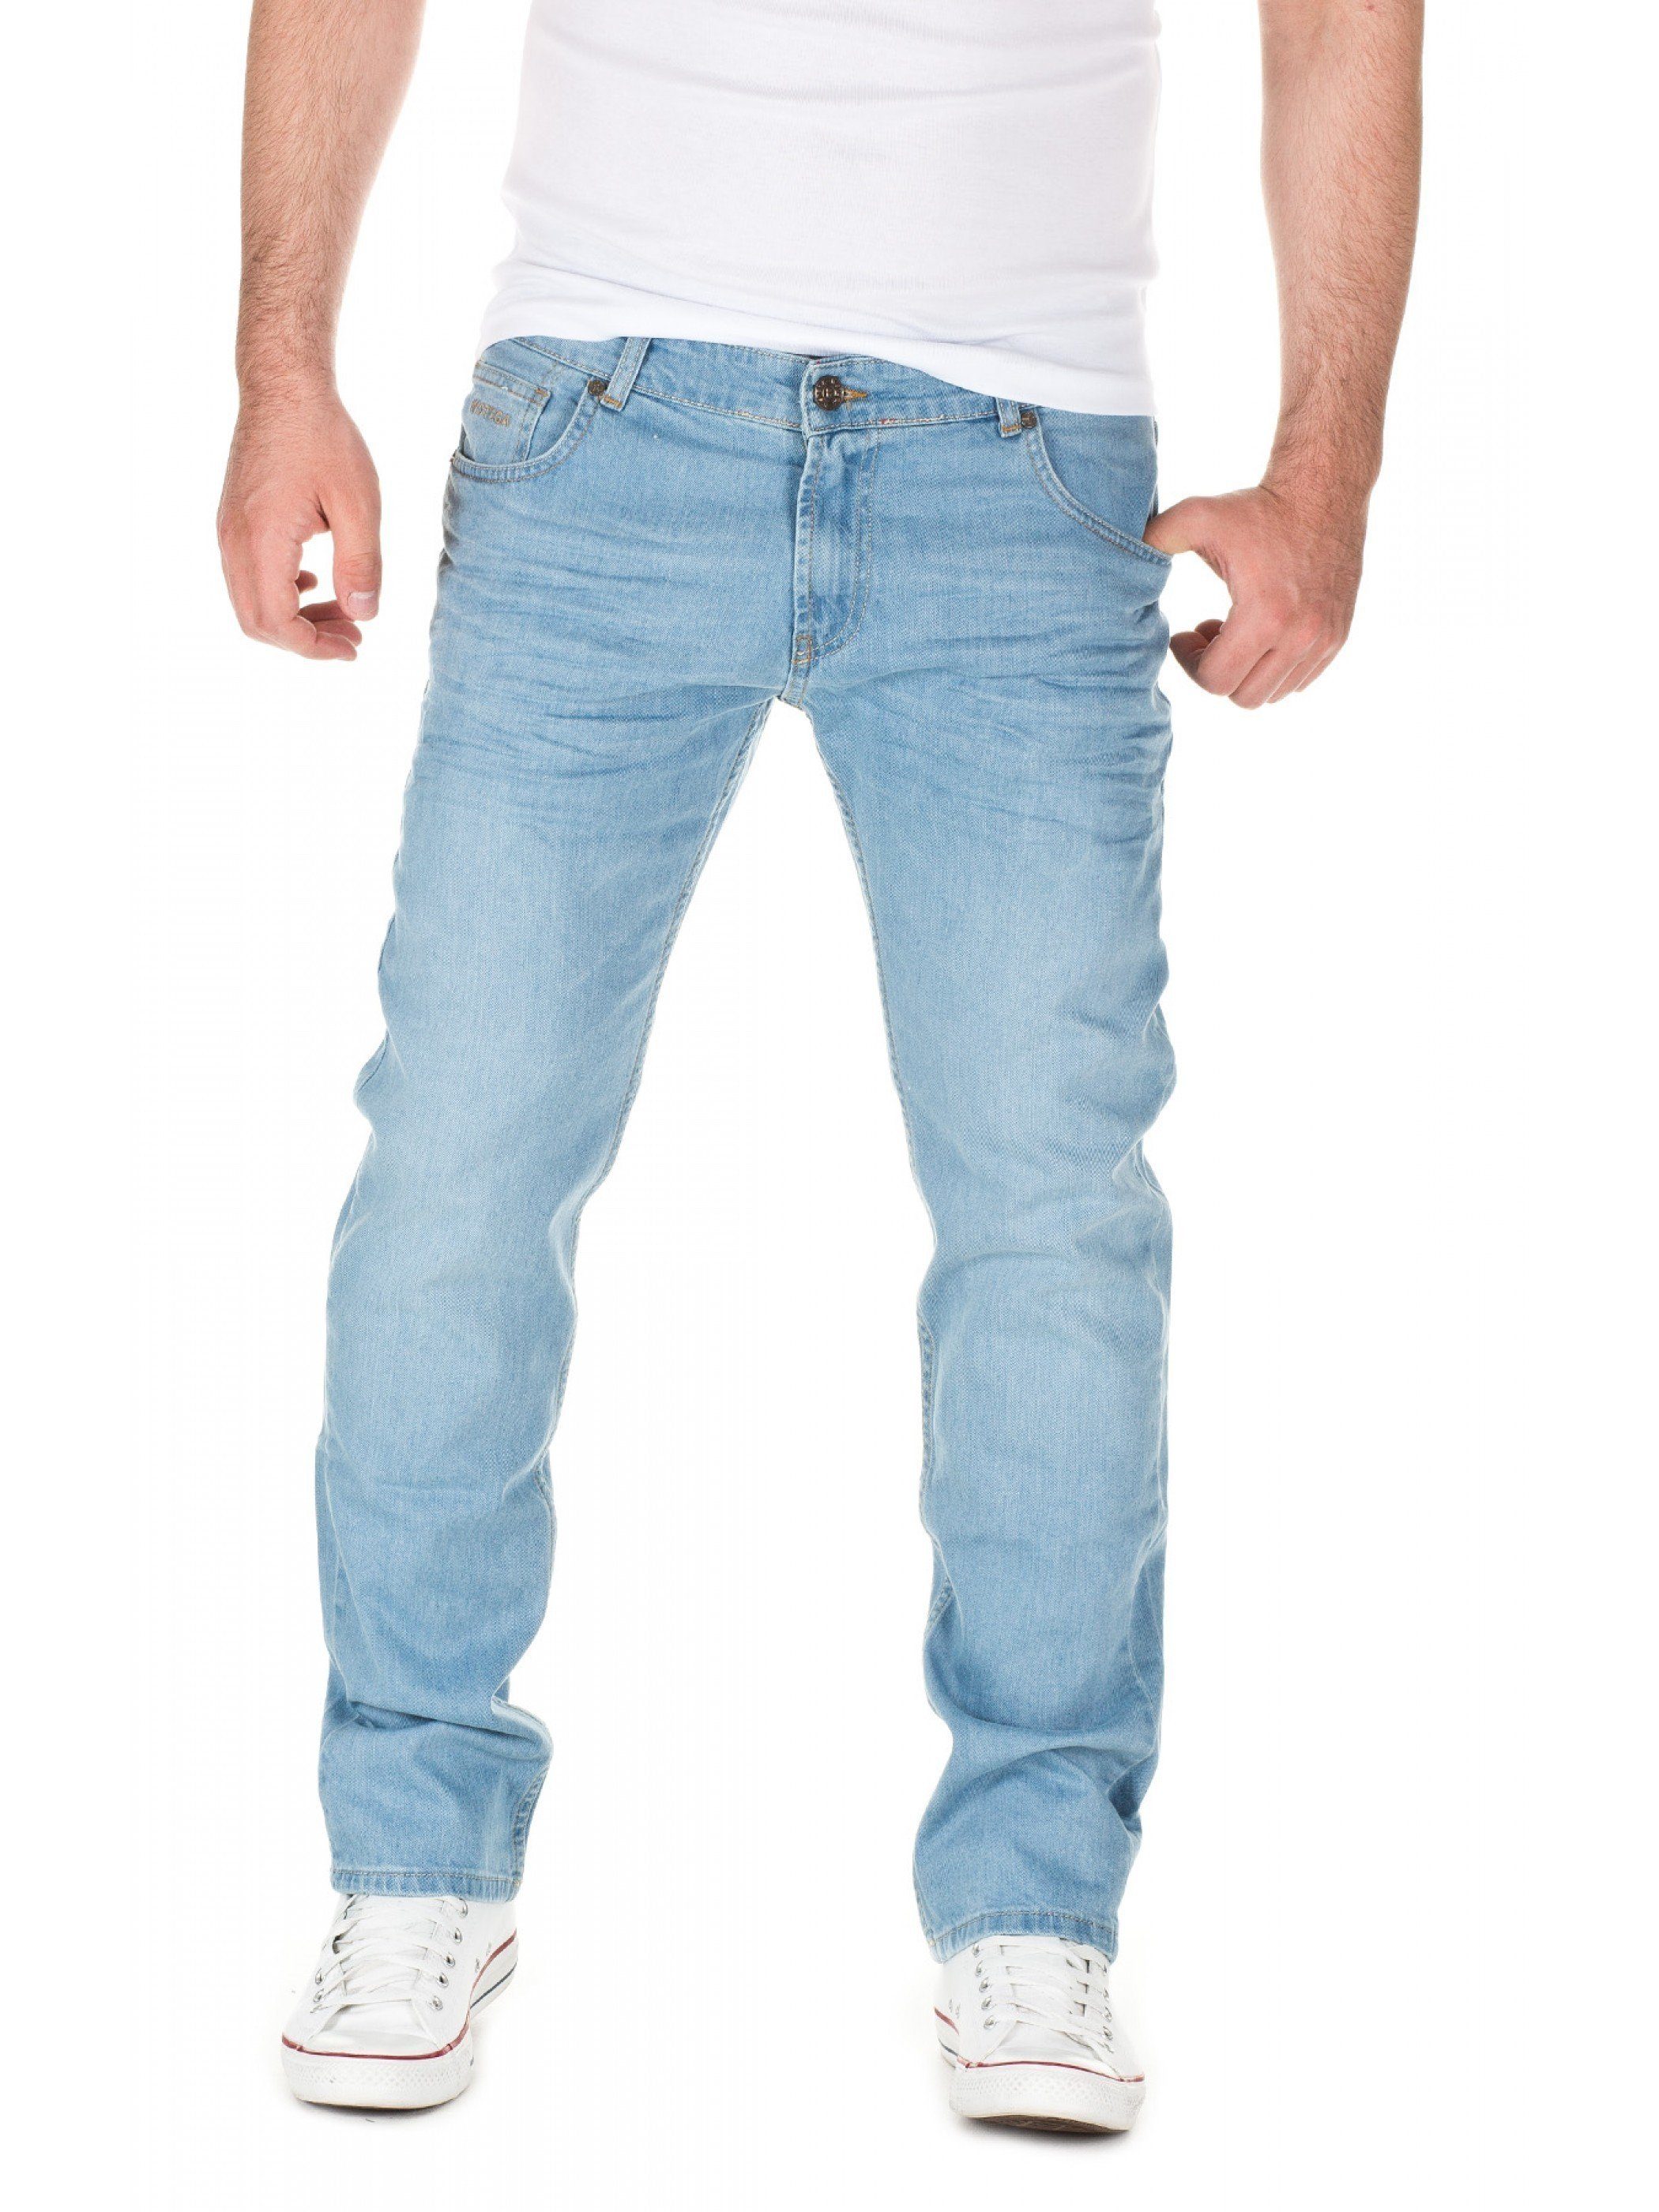 WOTEGA Slim-fit-Jeans Jeans Travis Blau (blue denim 411)